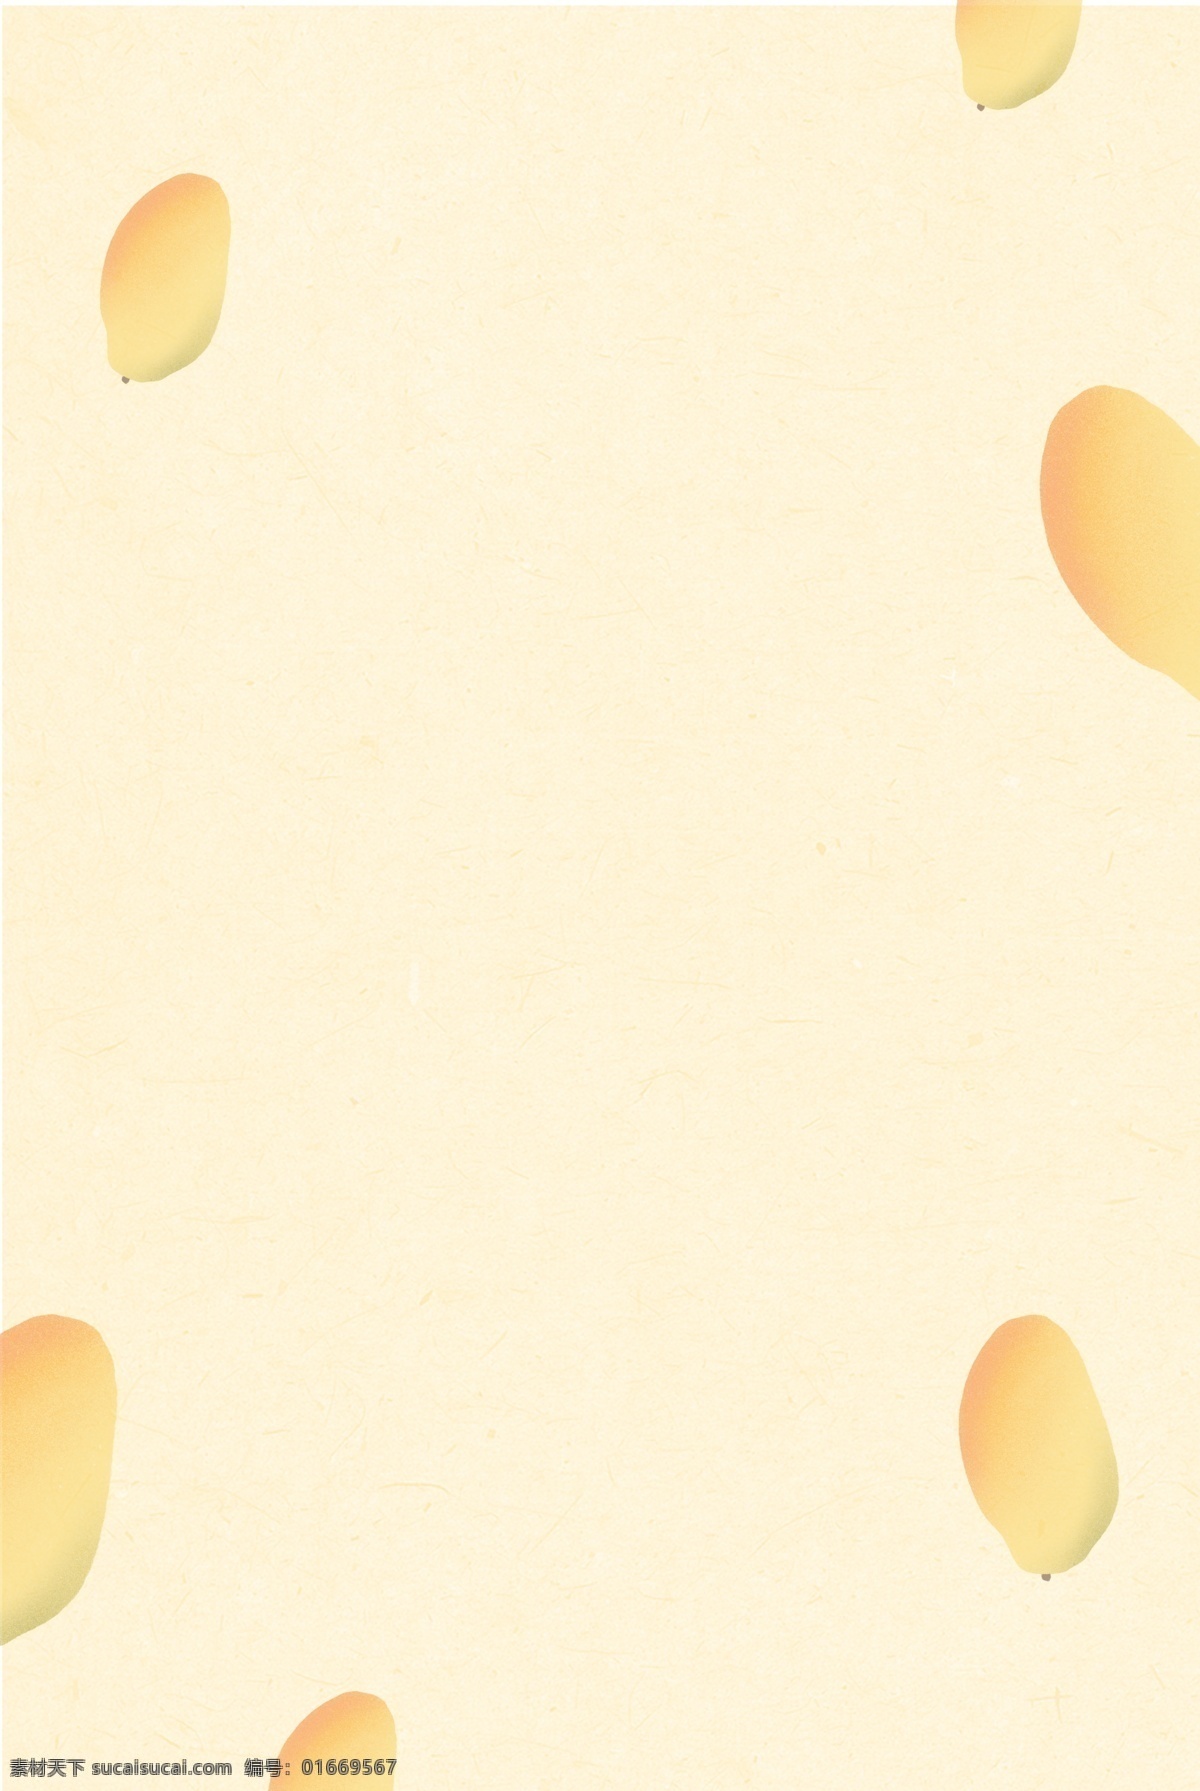 浅黄色 芒果 点缀 背景 水果背景 芒果点缀 简约 扁平 插画背景 卡通芒果 橙黄色